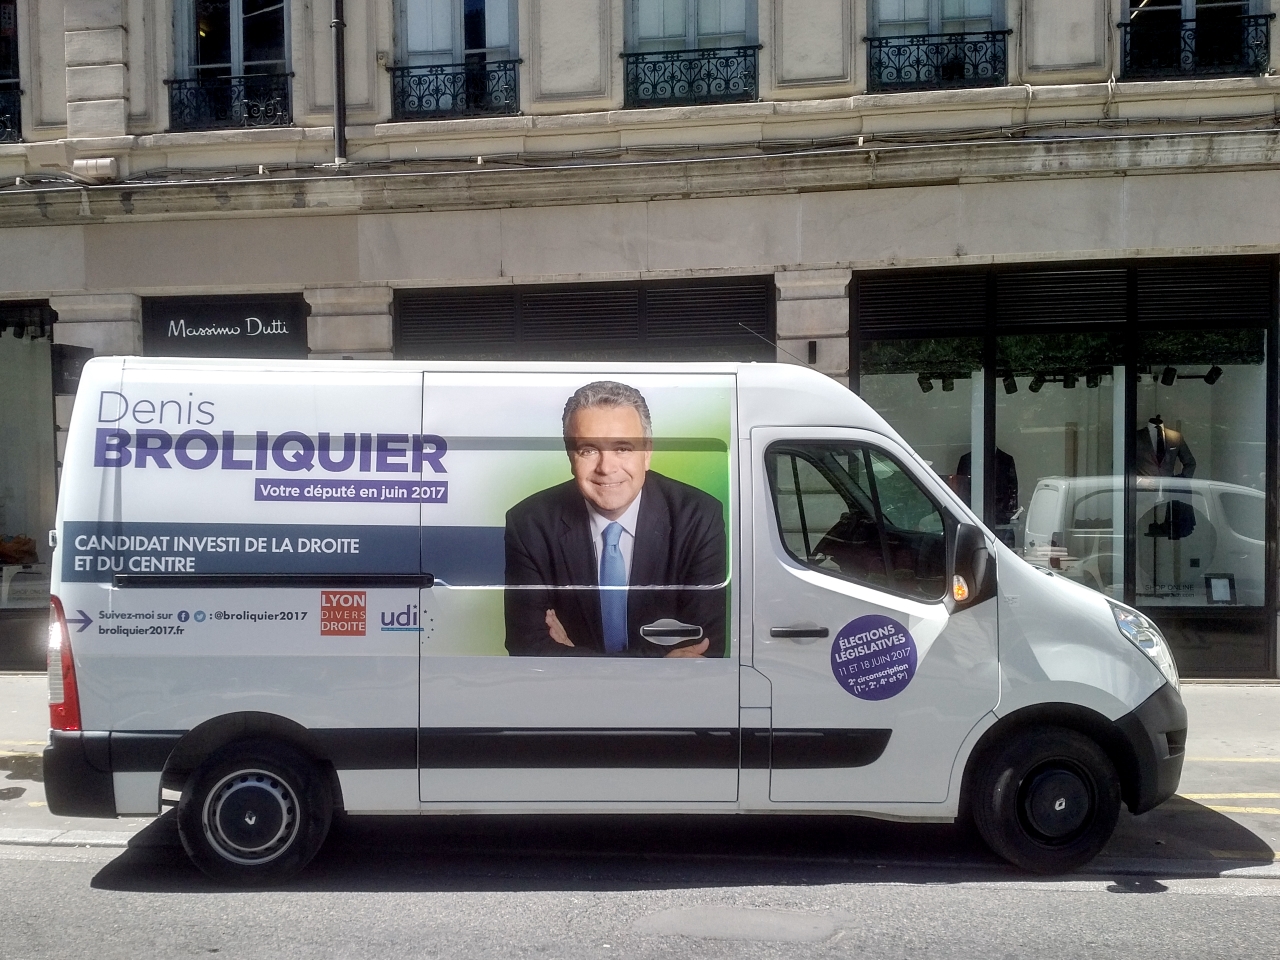 Le camion de campagne de Denis Broliquier